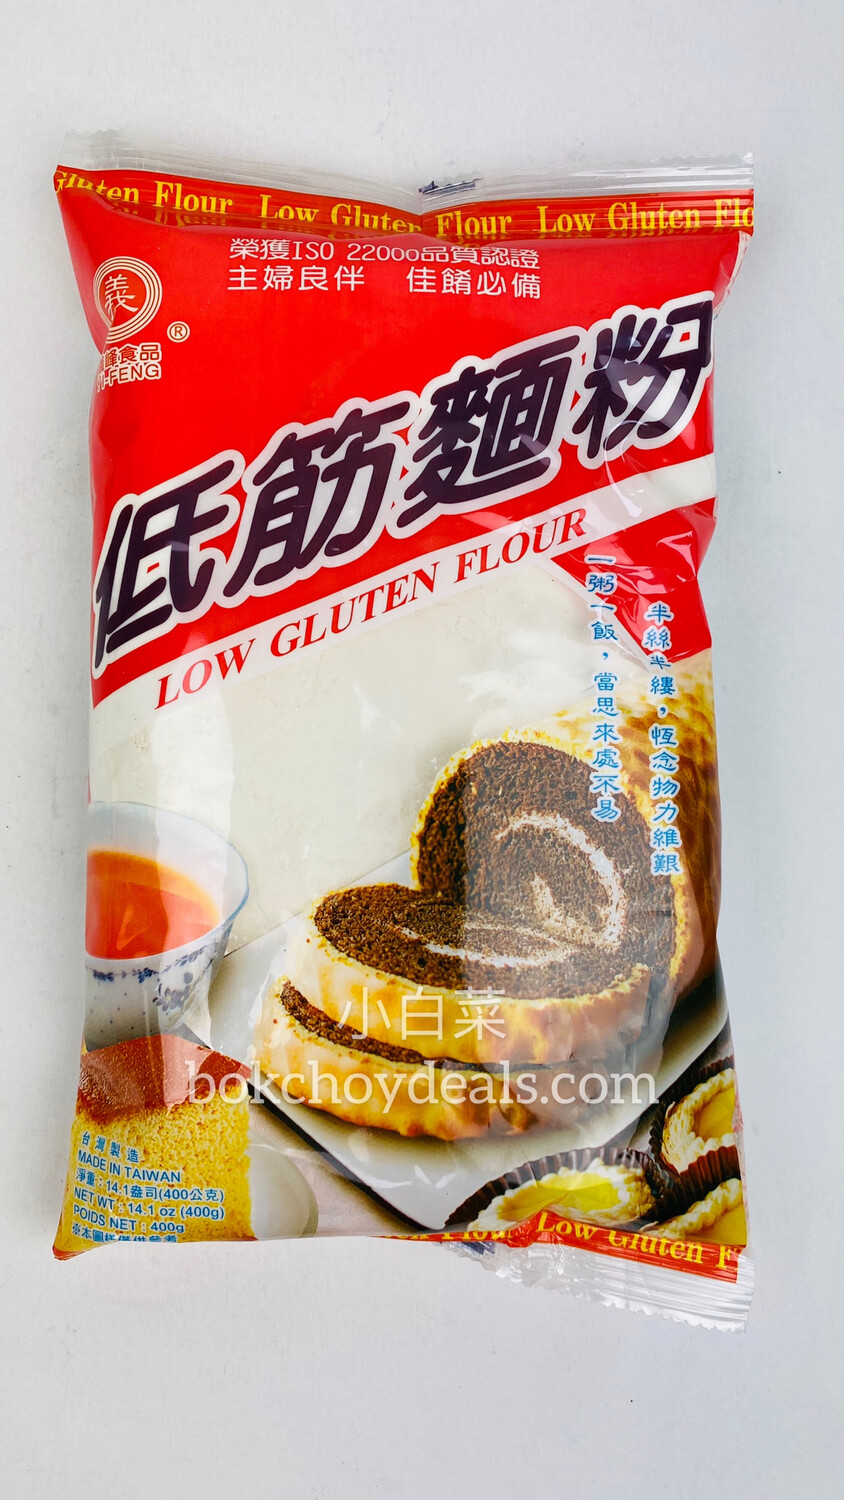 Yi Feng Low Gluten Flour 400g 义峰低筋面粉